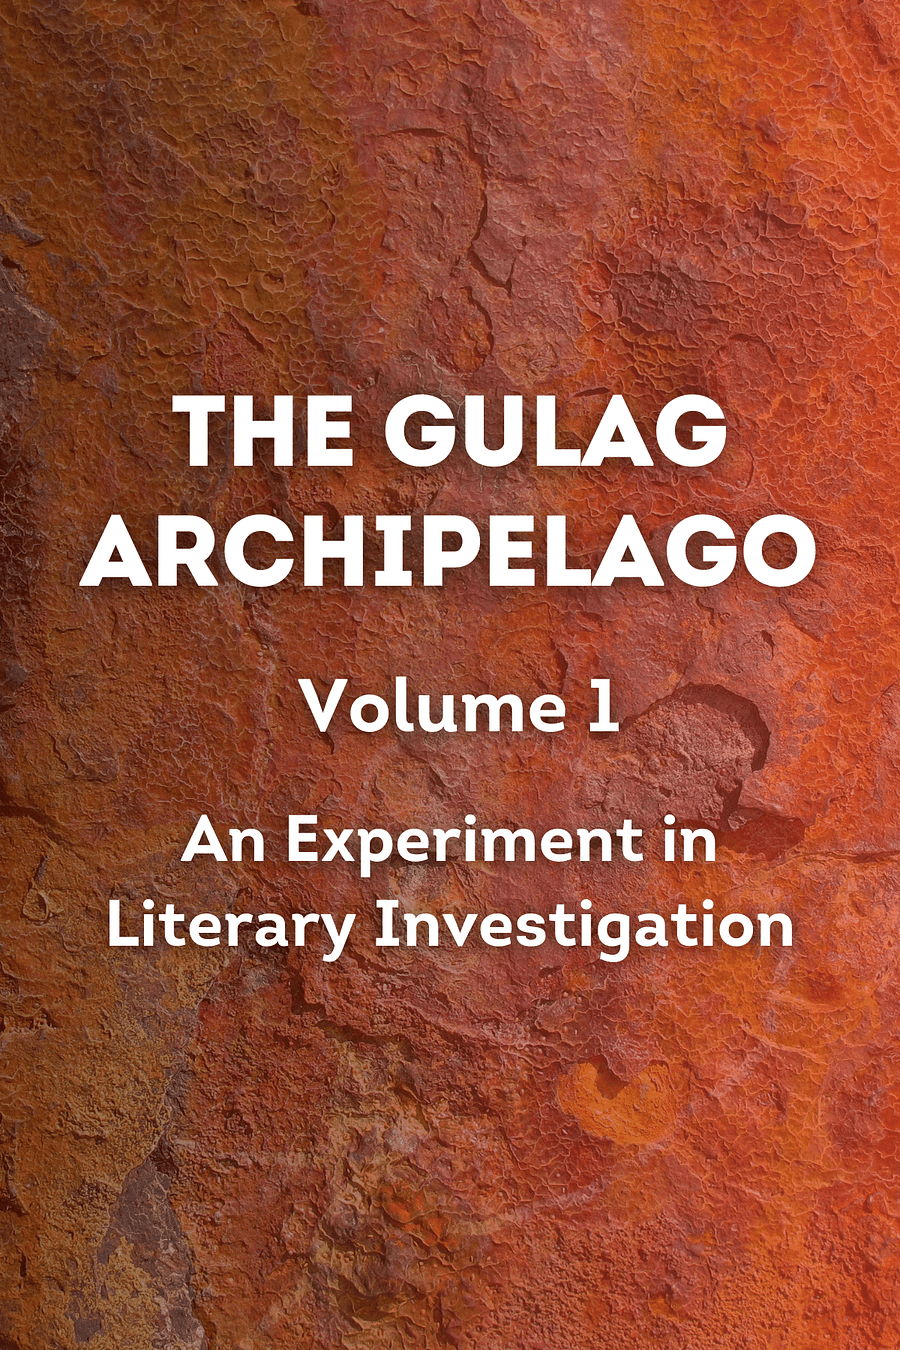 The Gulag Archipelago [Volume 1] by Aleksandr Solzhenitsyn - Book Summary